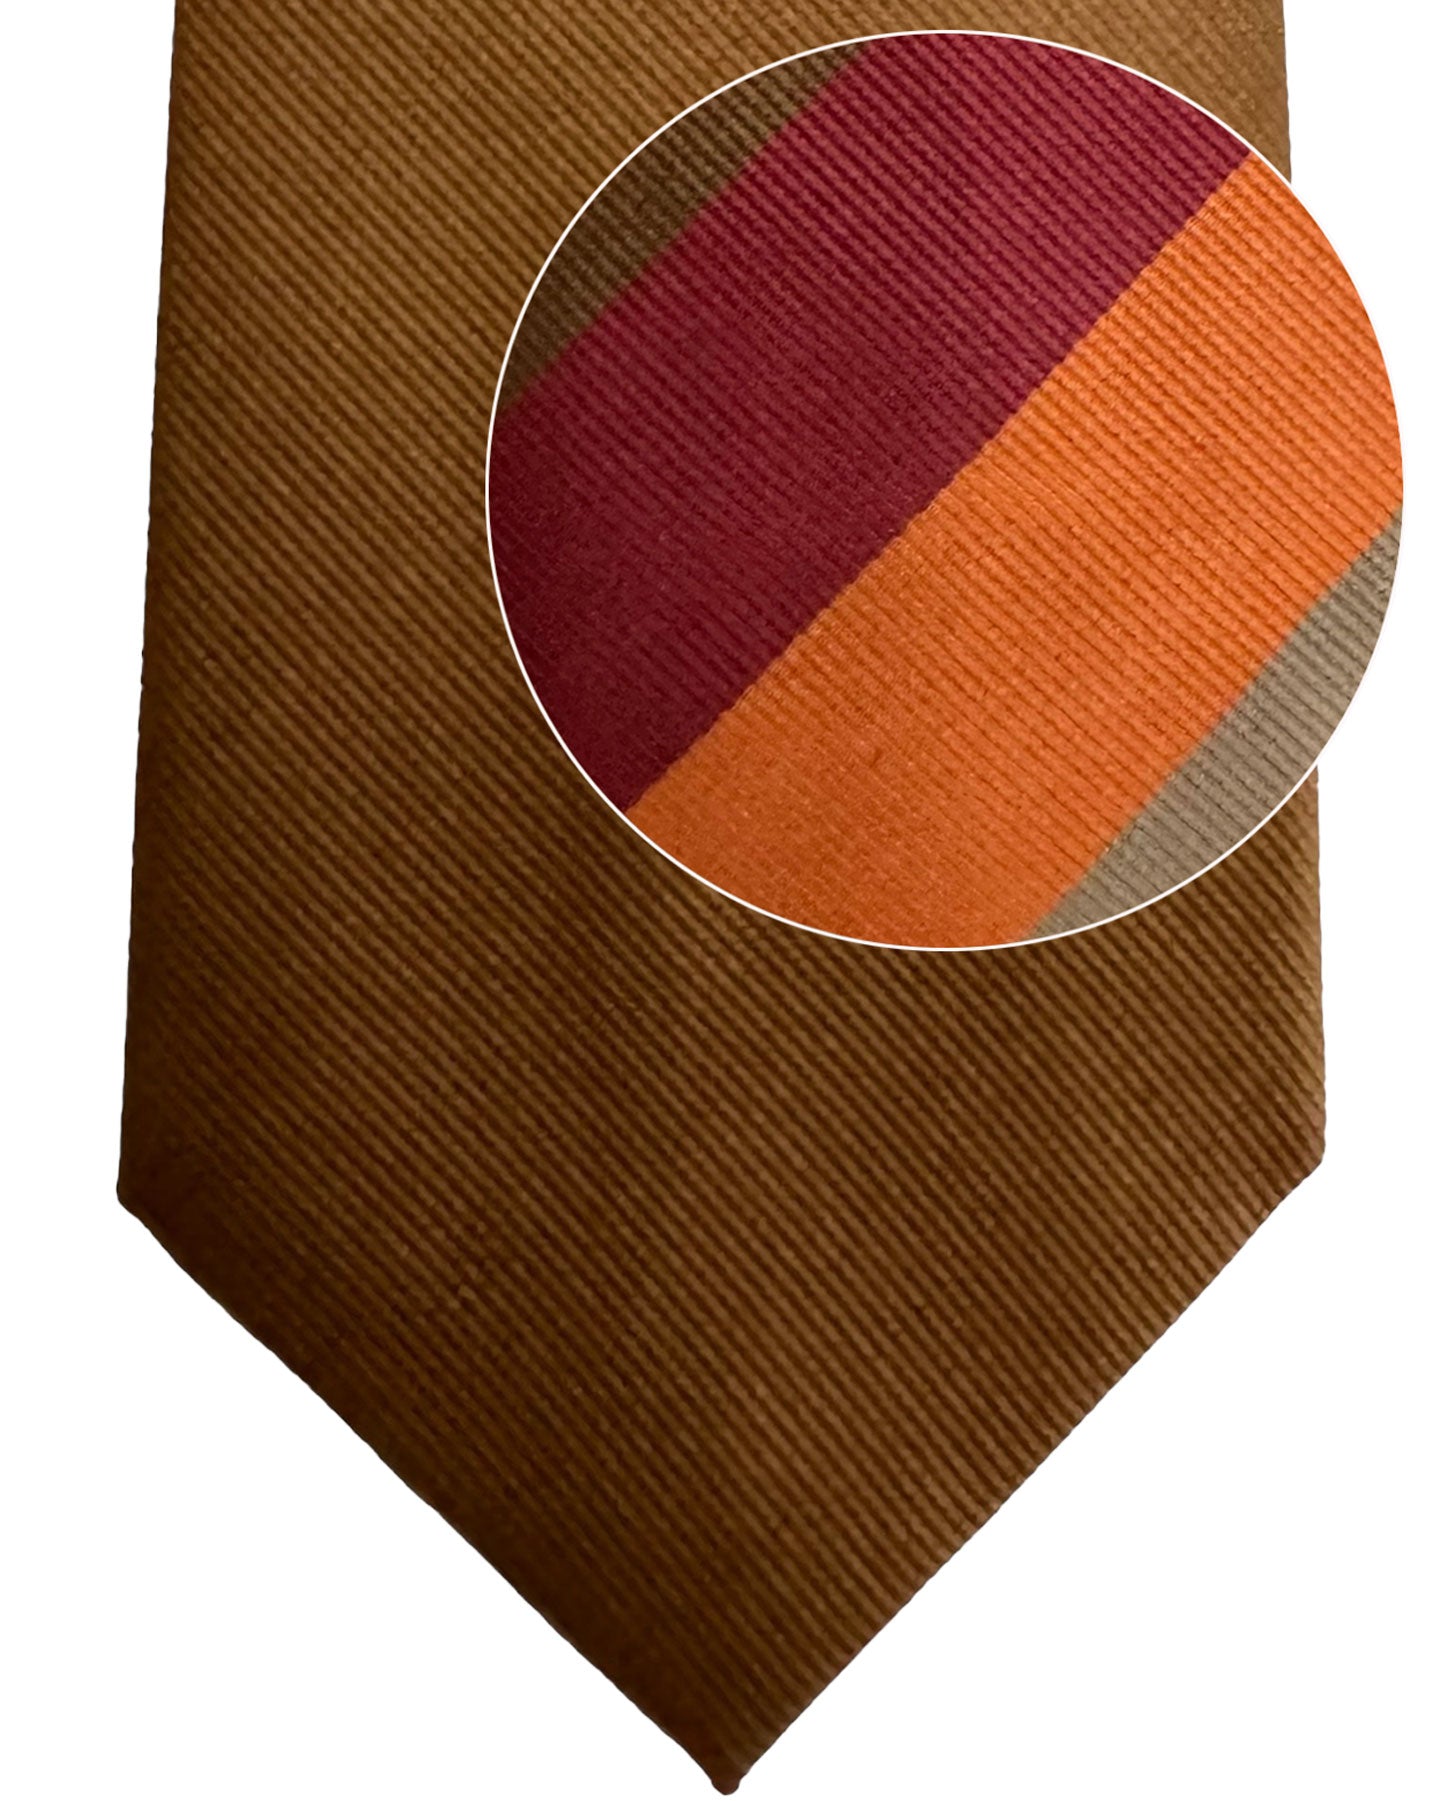 Gene Meyer Tie Brown Orange Maroon Stripes Design - Hand Made in Italy